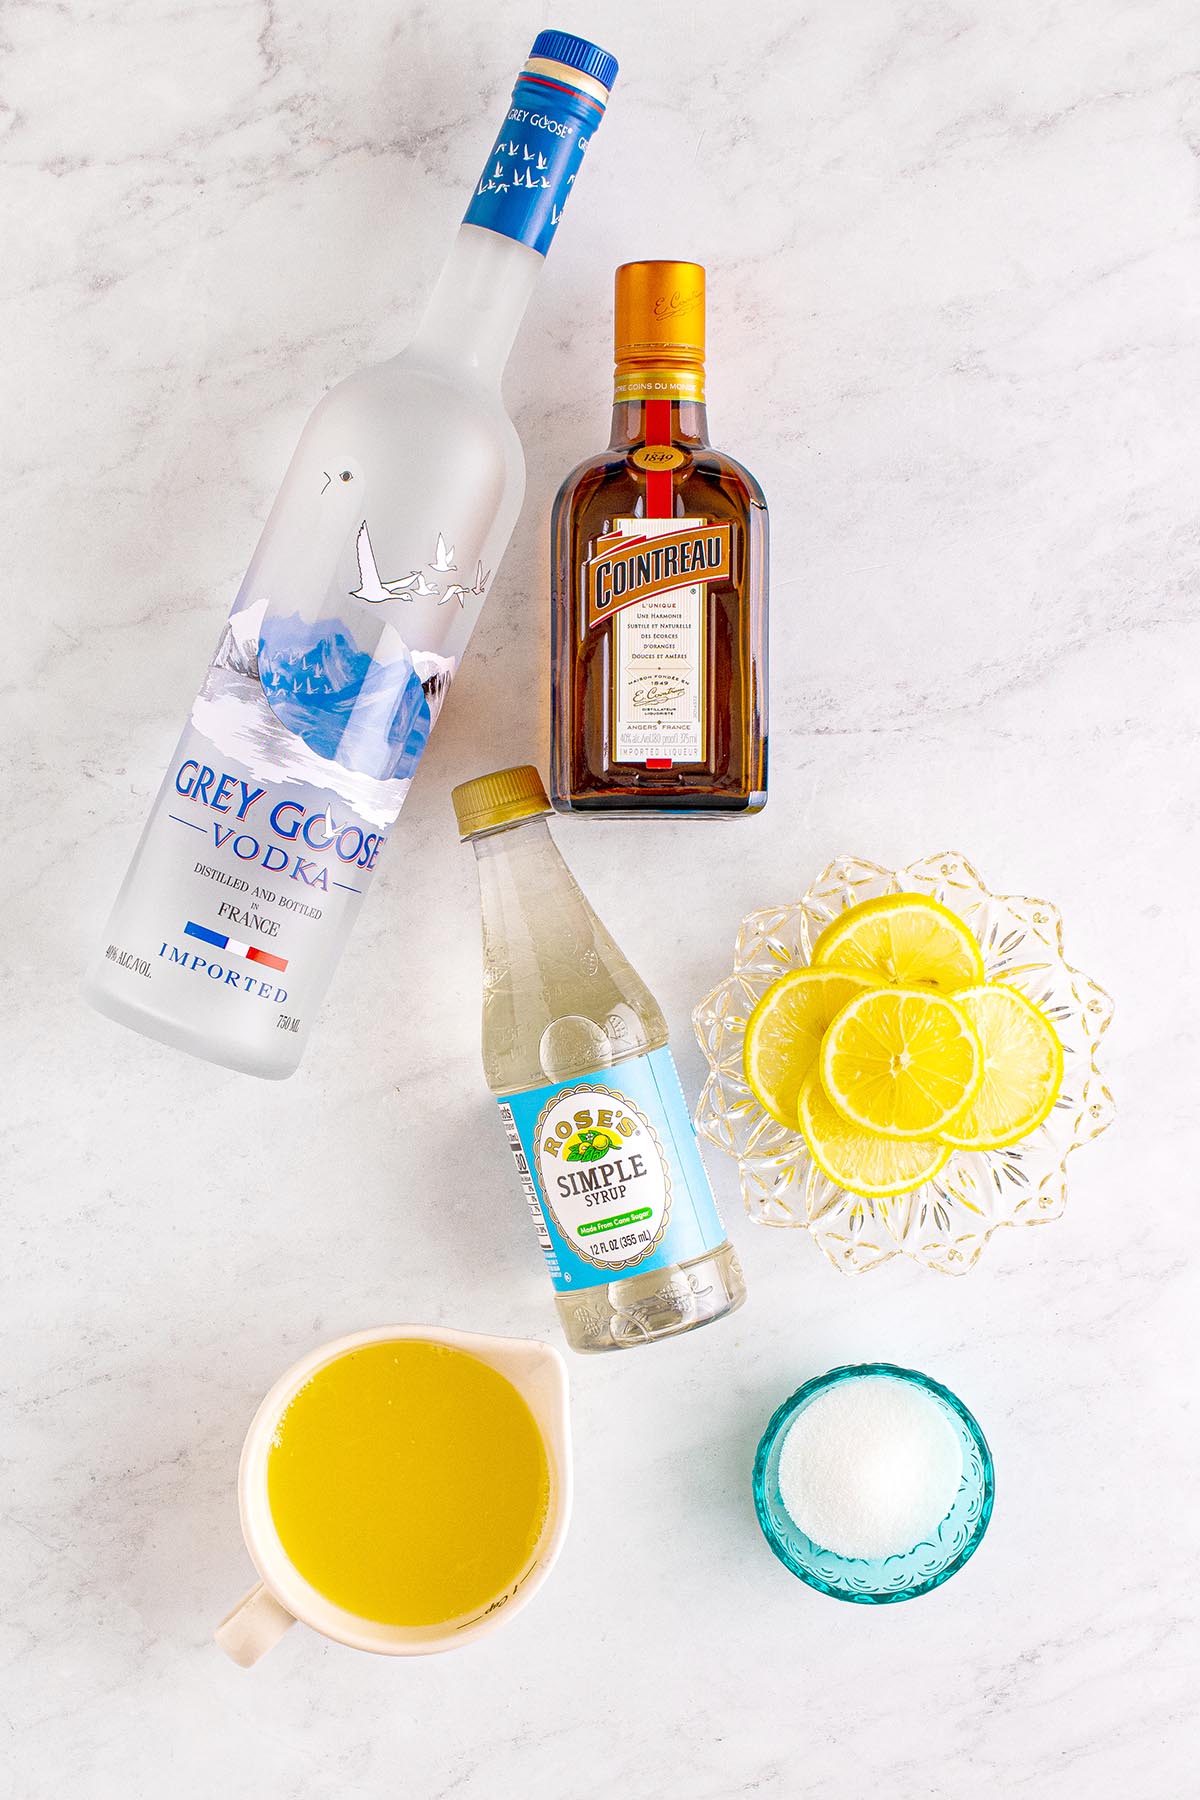 lemon drop martini ingredients